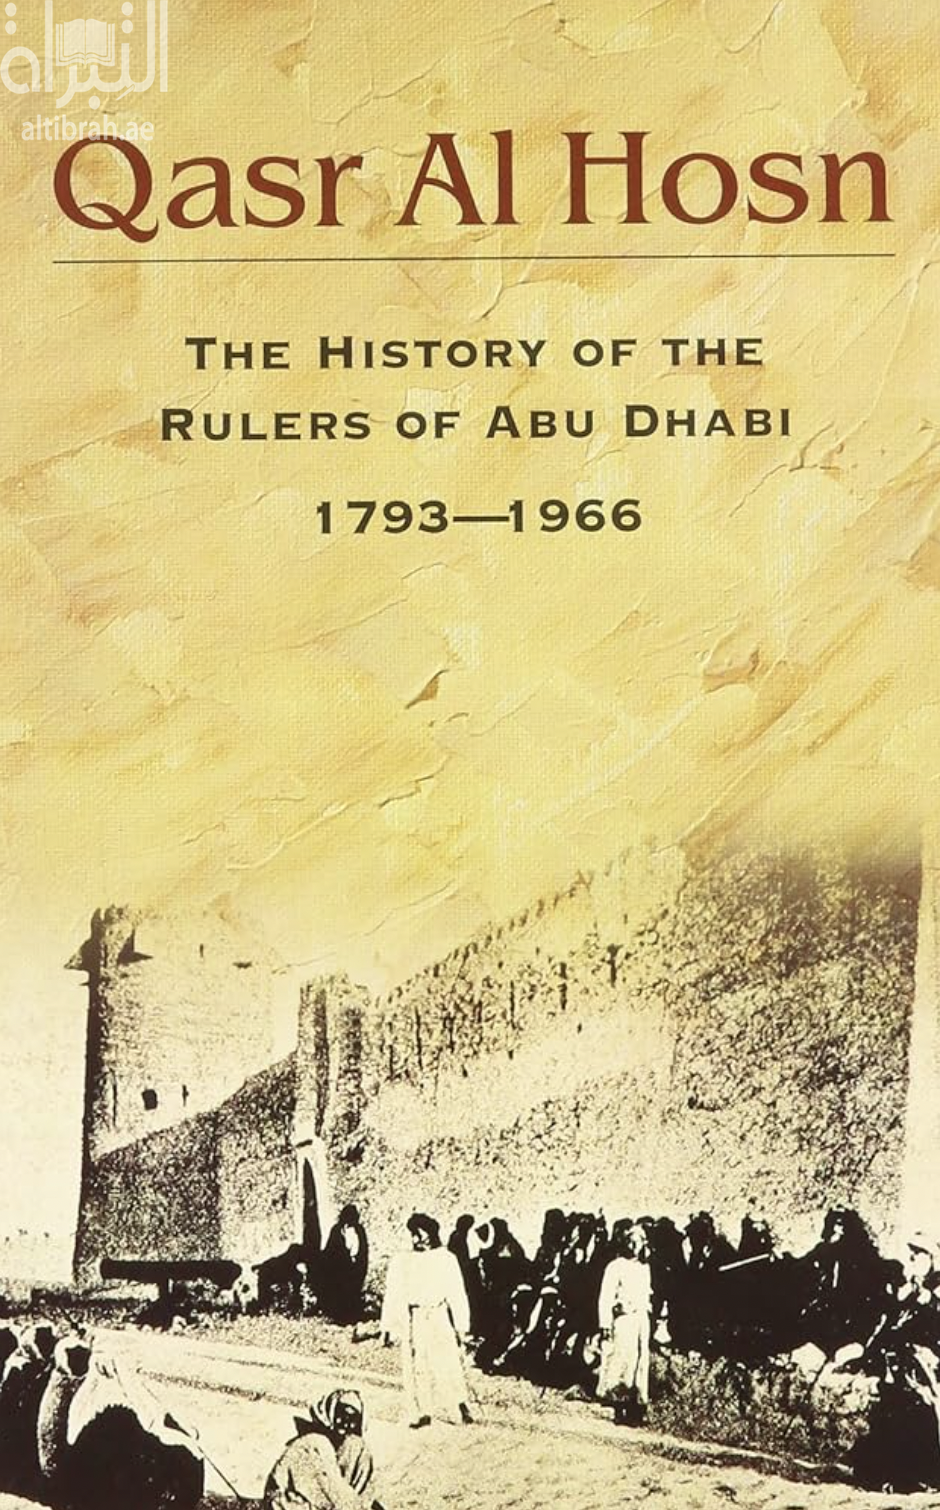 كتاب قصر الحصن Qasr Al Hosn: The History of the Rulers of Abu Dhabi, 1793-1966